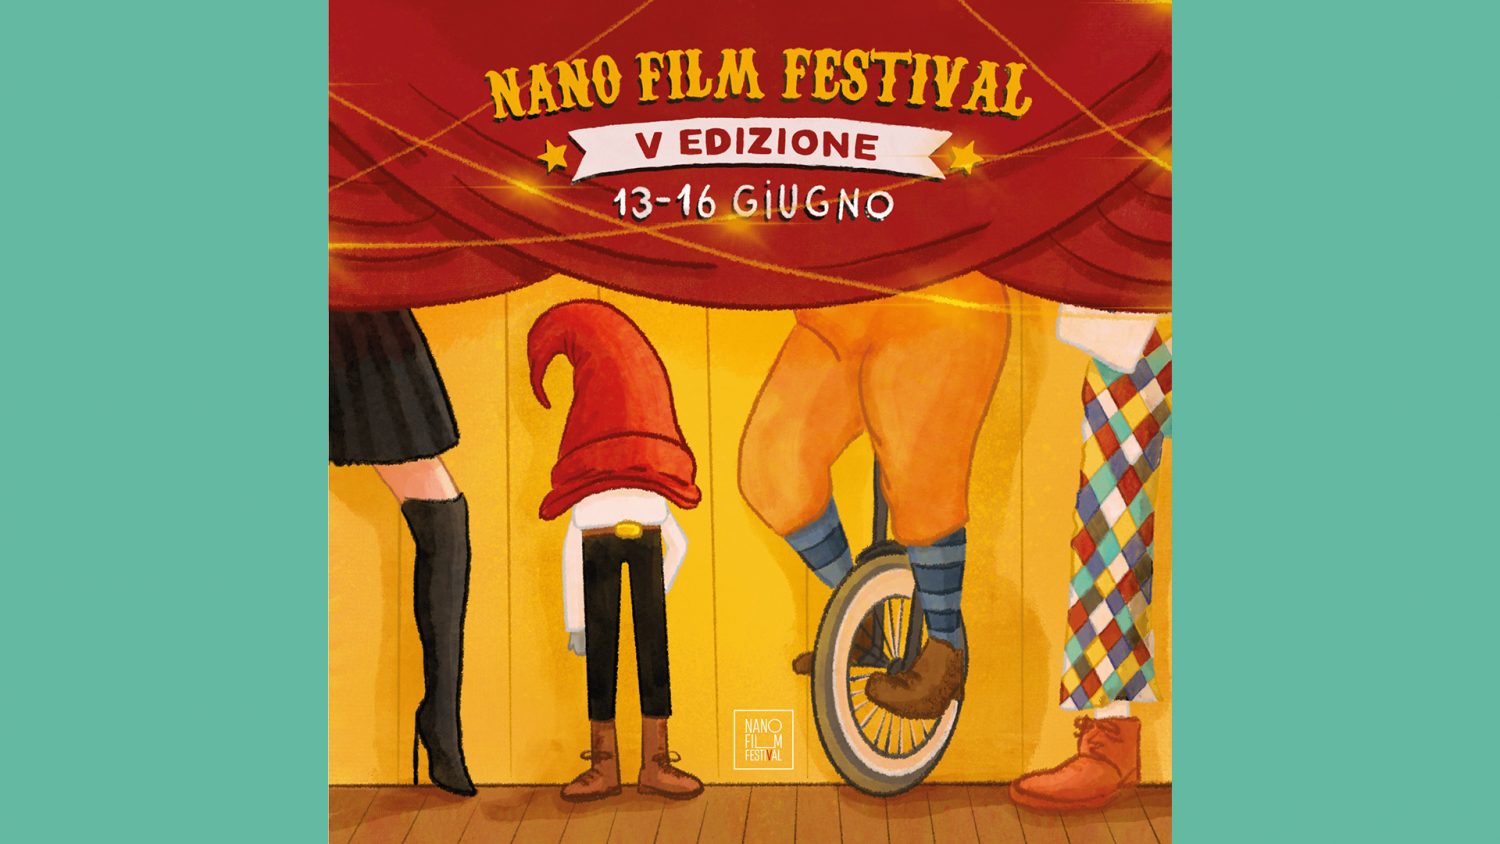 NaNo Film Festival, torna a Napoli l’appuntamento dedicato al cortometraggio